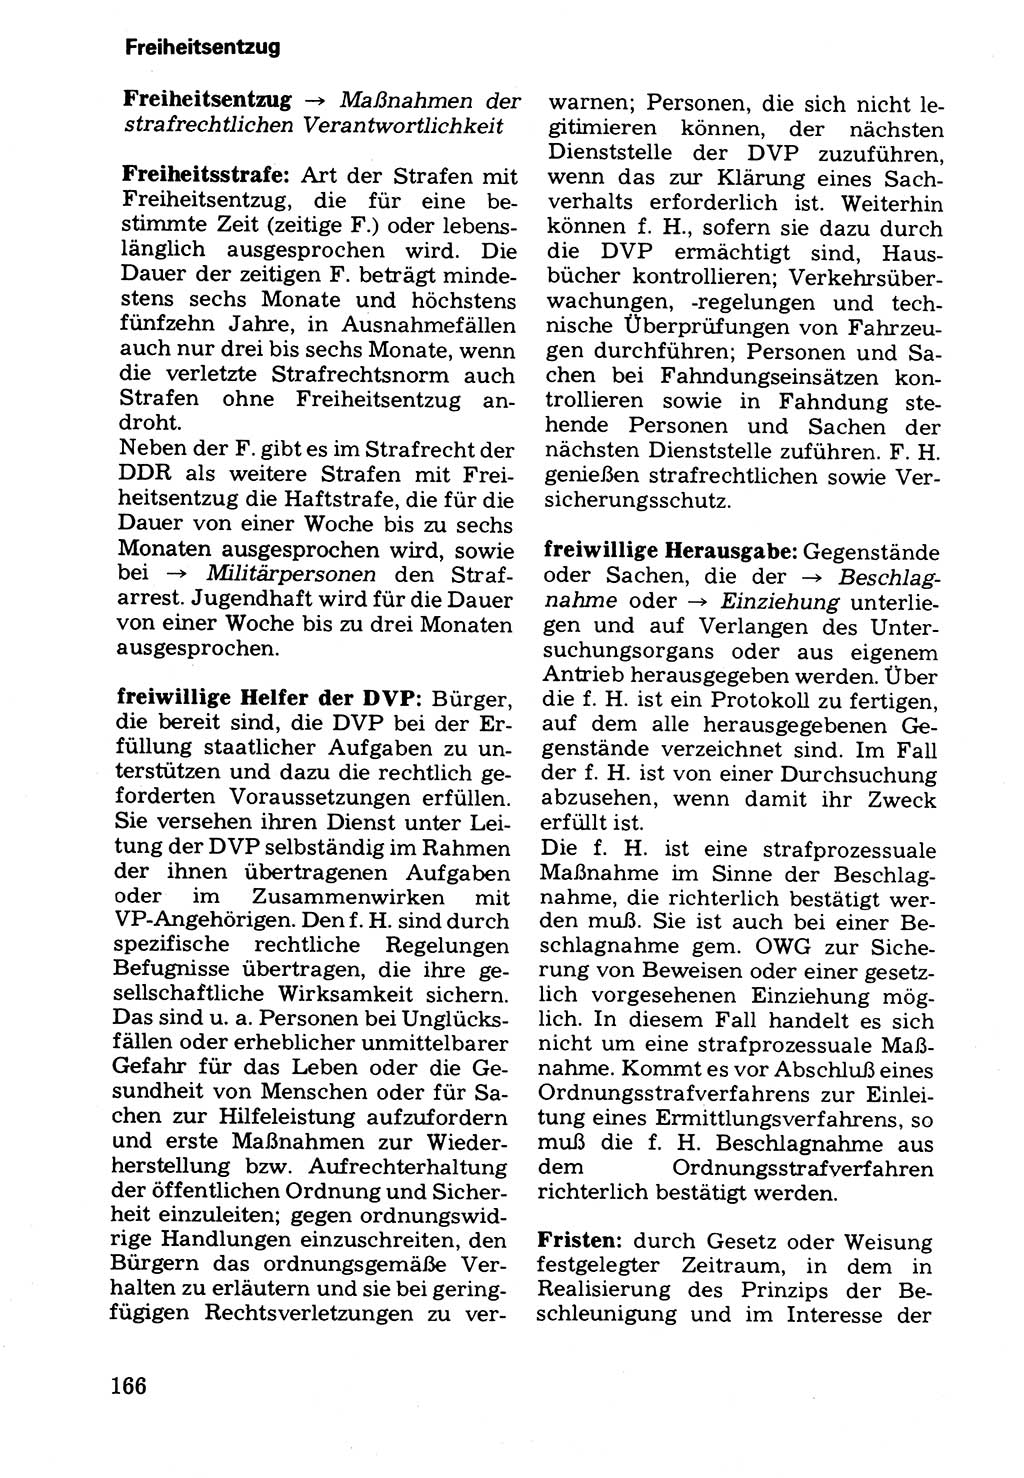 Wörterbuch der sozialistischen Kriminalistik [Deutsche Demokratische Republik (DDR)] 1981, Seite 166 (Wb. soz. Krim. DDR 1981, S. 166)